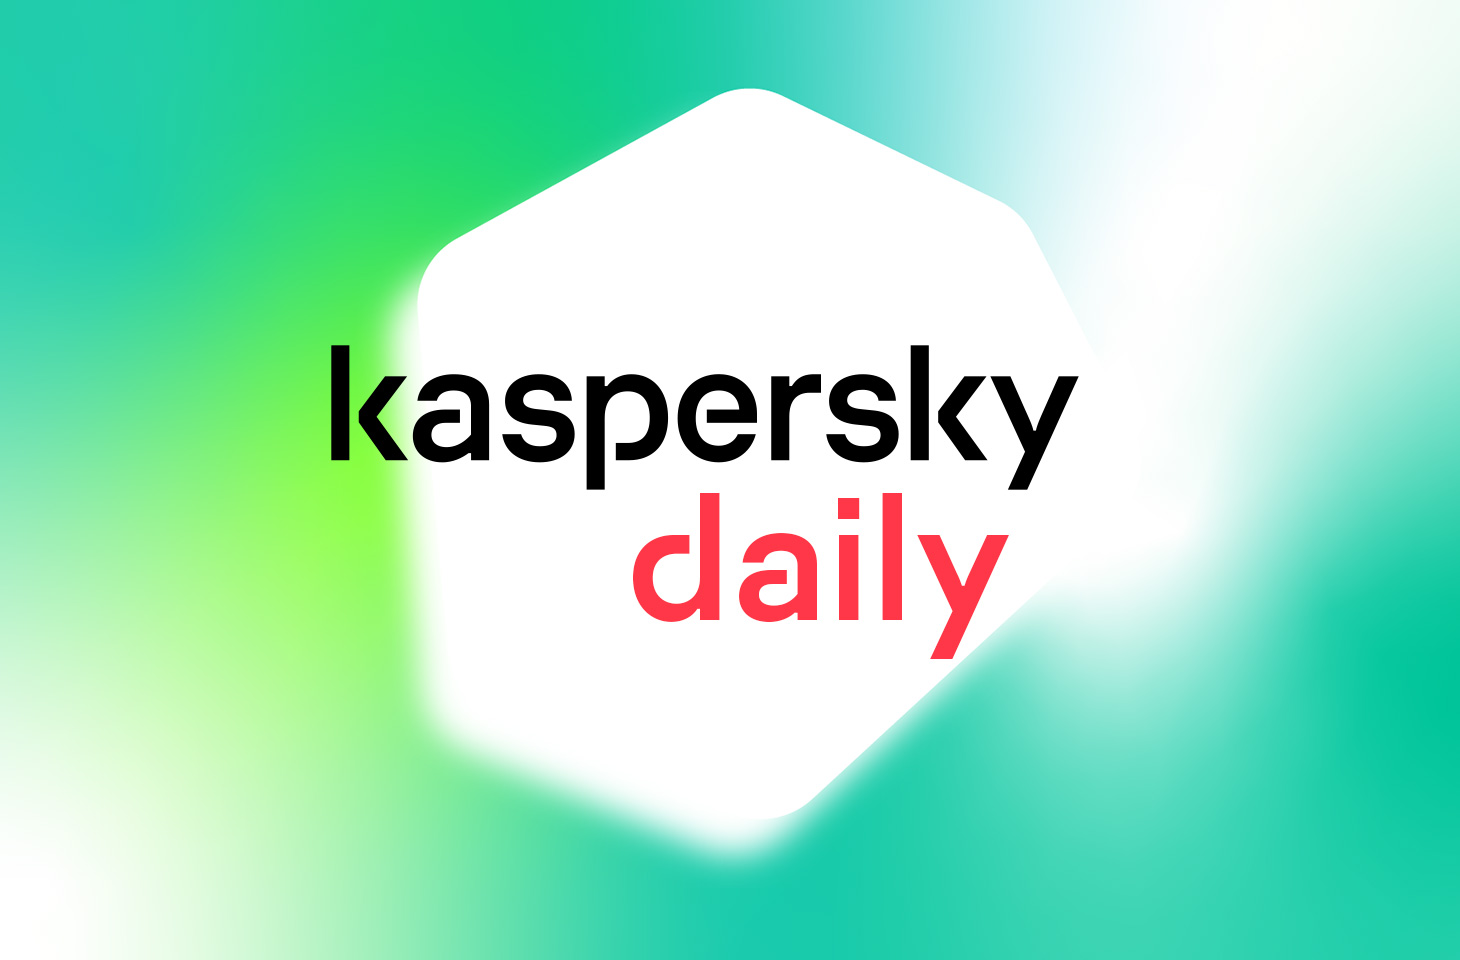 www.kaspersky.ru